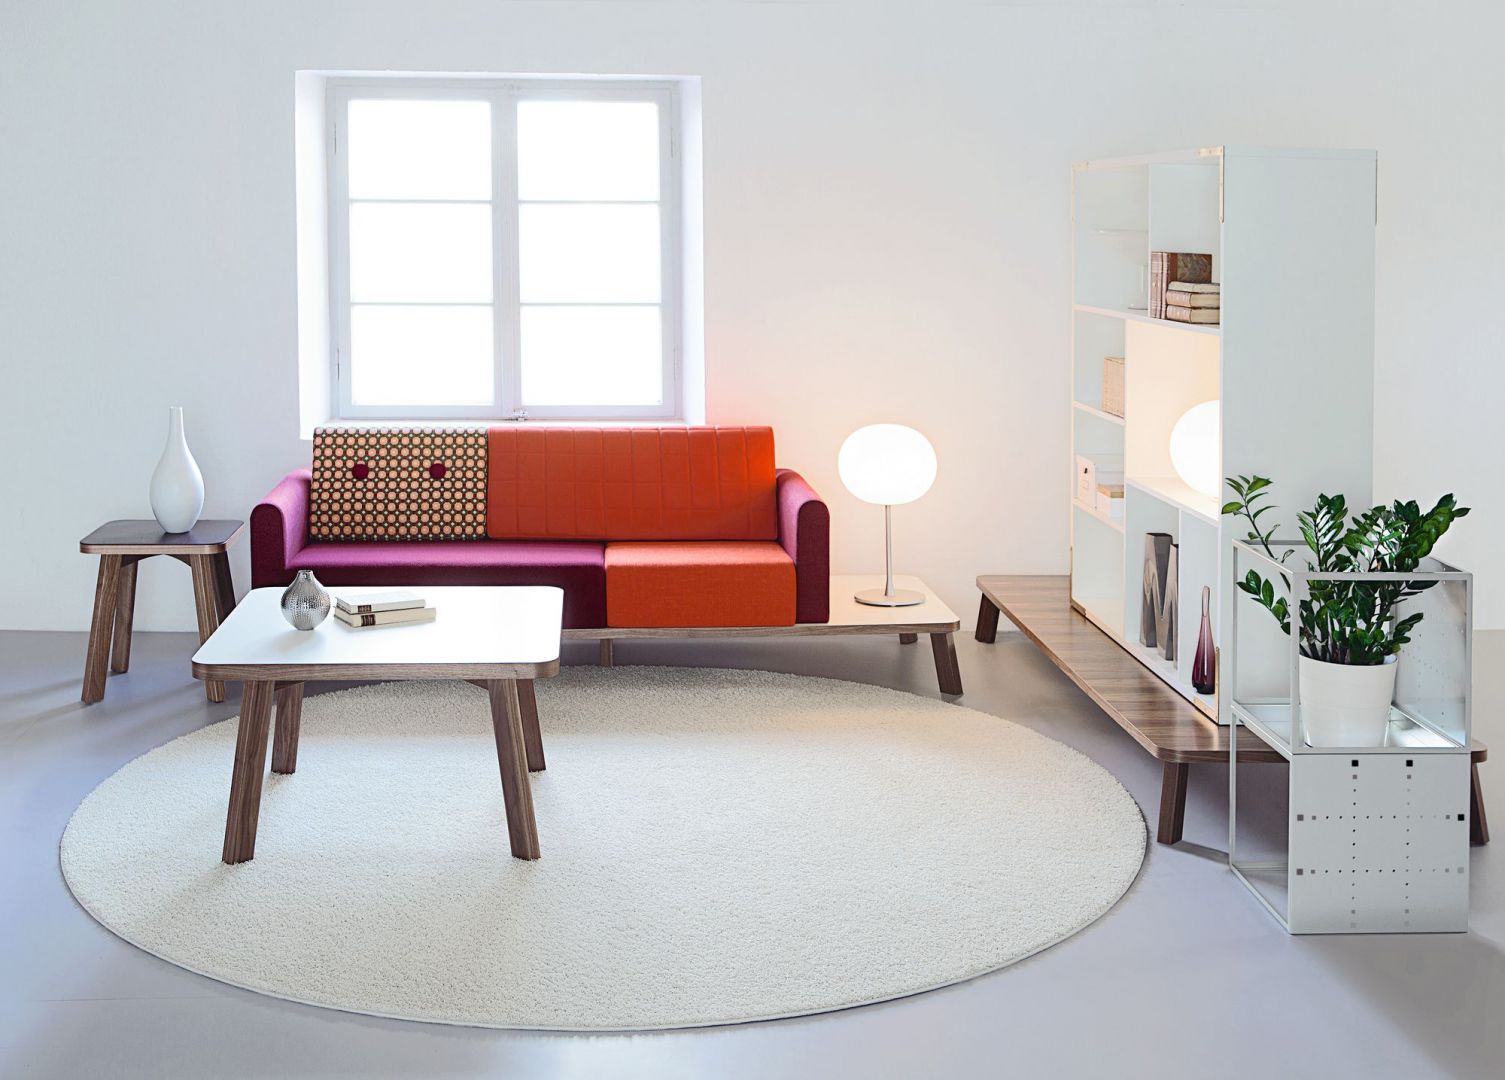 Sofa Couture to minimalistyczny design, który zachwyca funkcjonalnością. Półka kompatybilna z siedziskiem może być alternatywą dla stolika kawowego. Sofa ujmuje także wspaniałym zostawieniem kolorów tapicerki. Fot. Materia